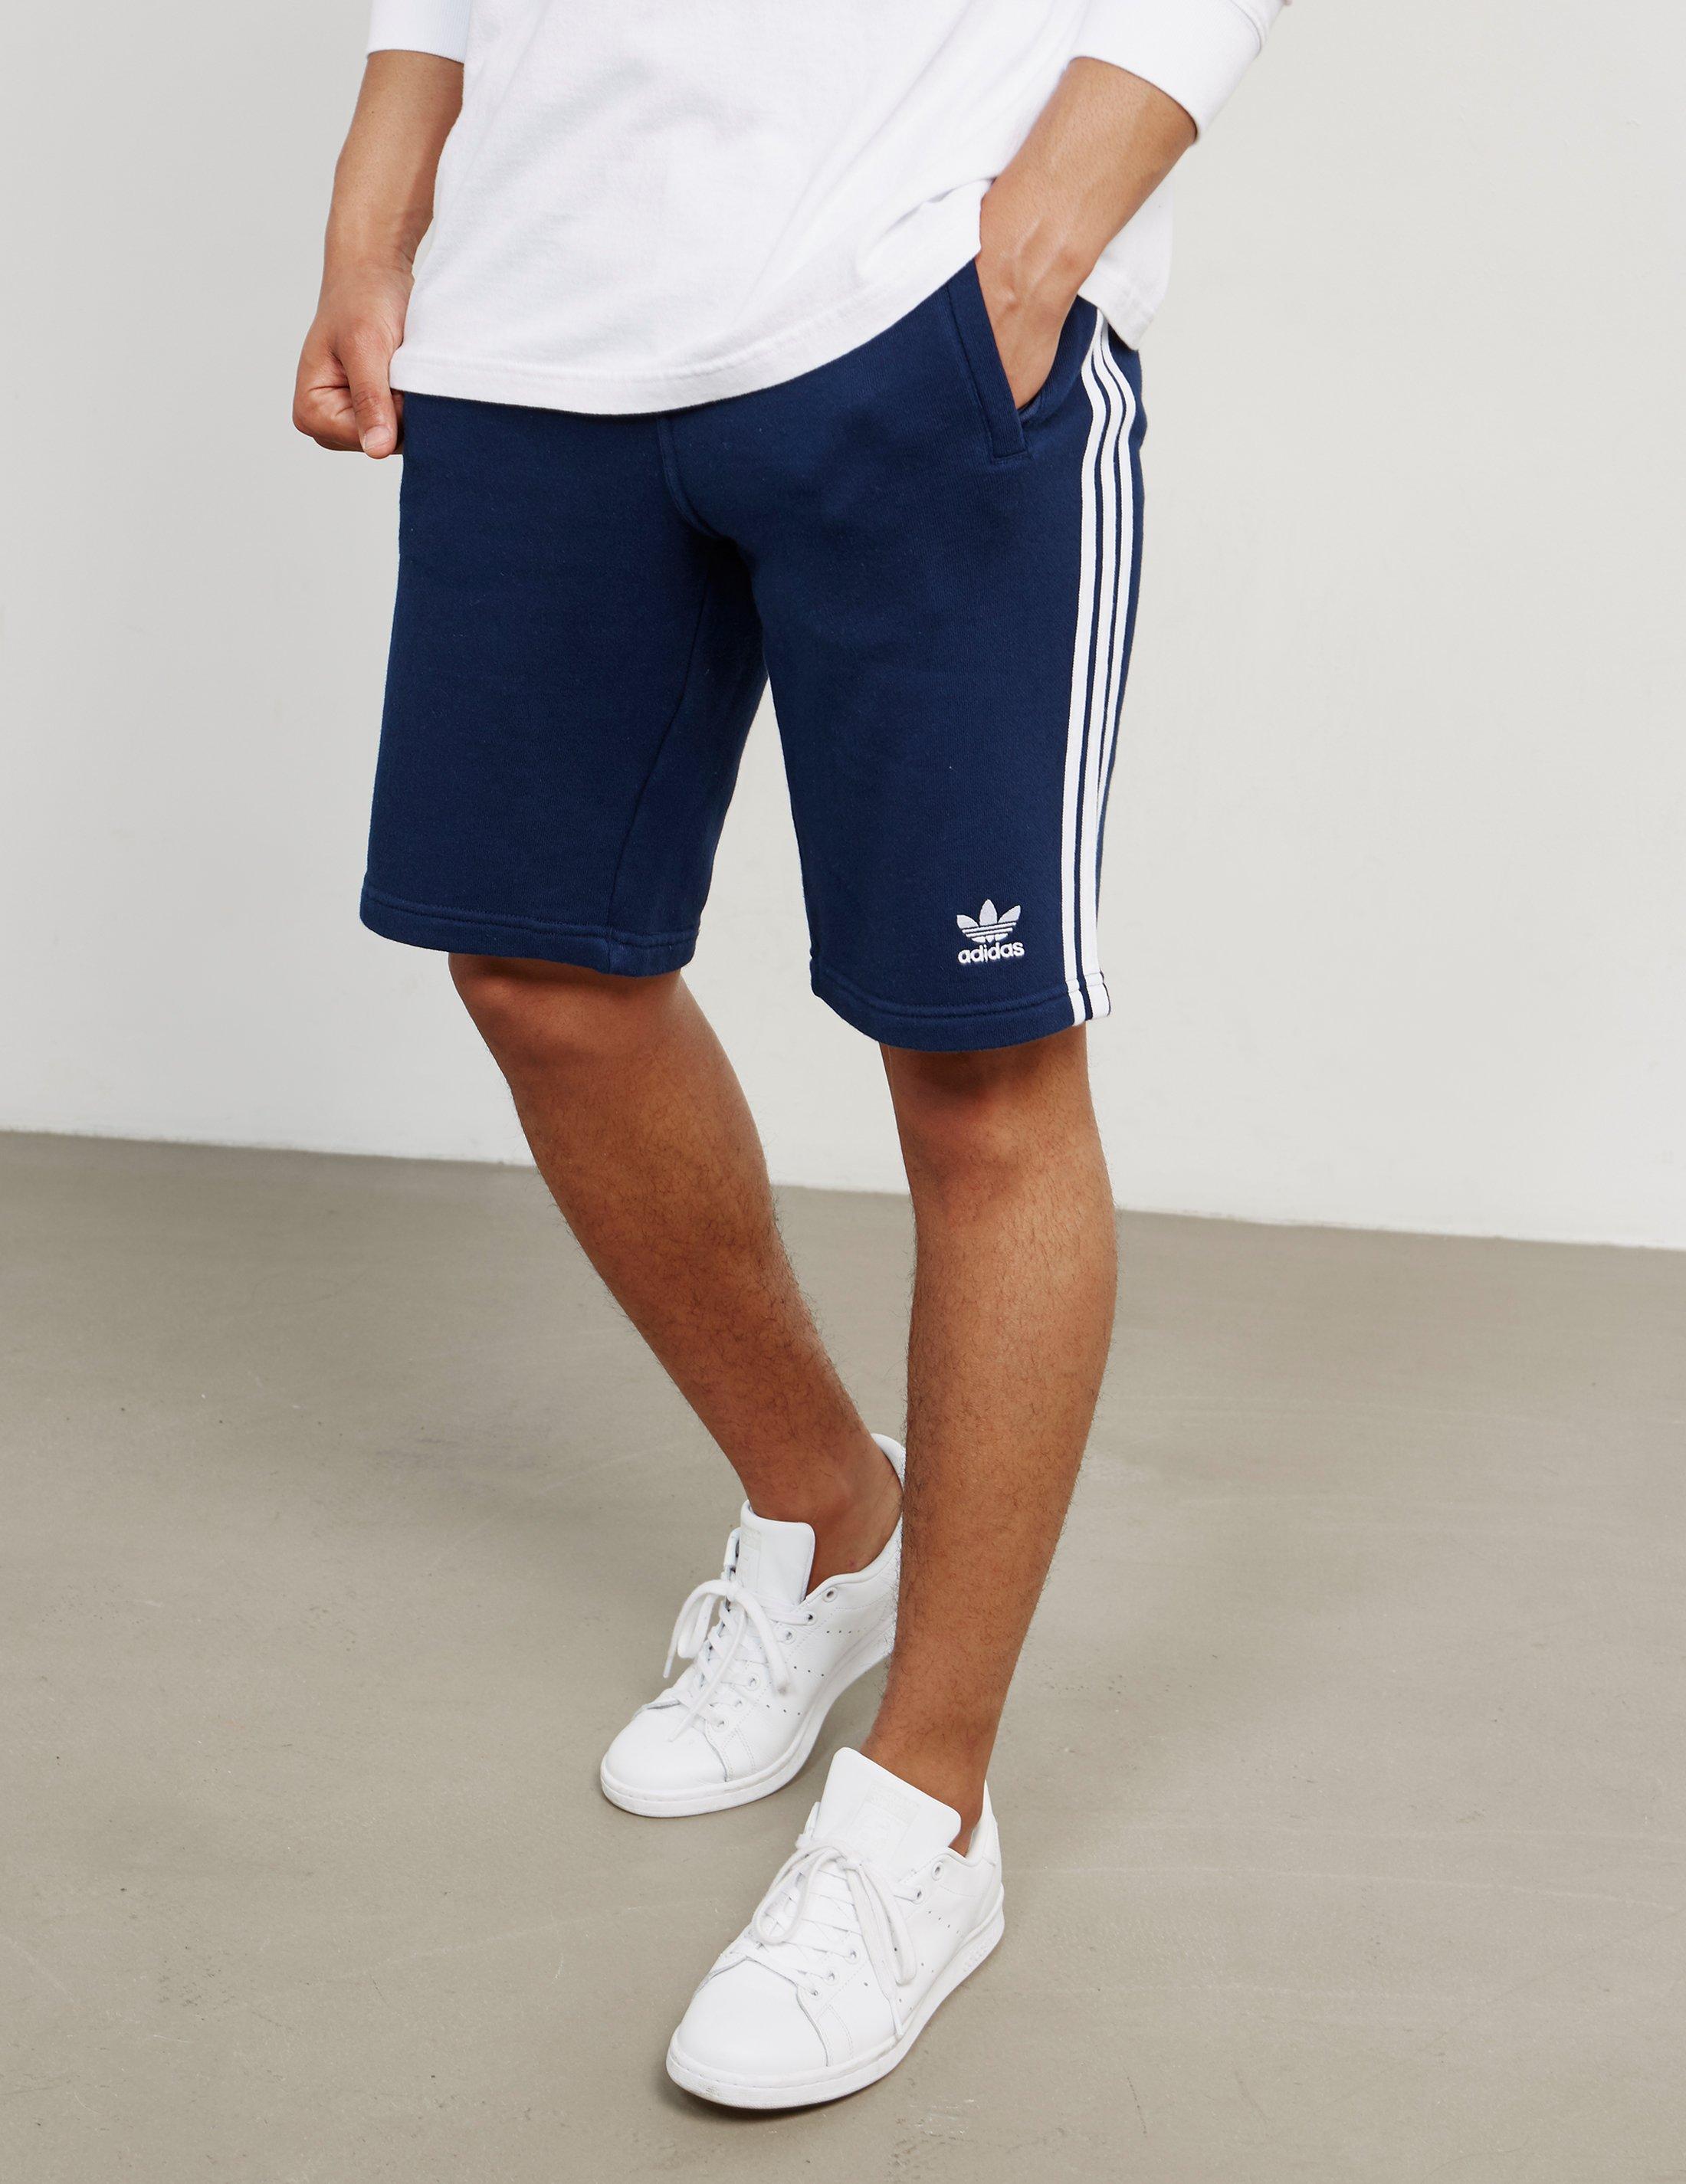 Lyst - adidas Originals Mens 3-stripes Fleece Shorts Navy Blue in Blue